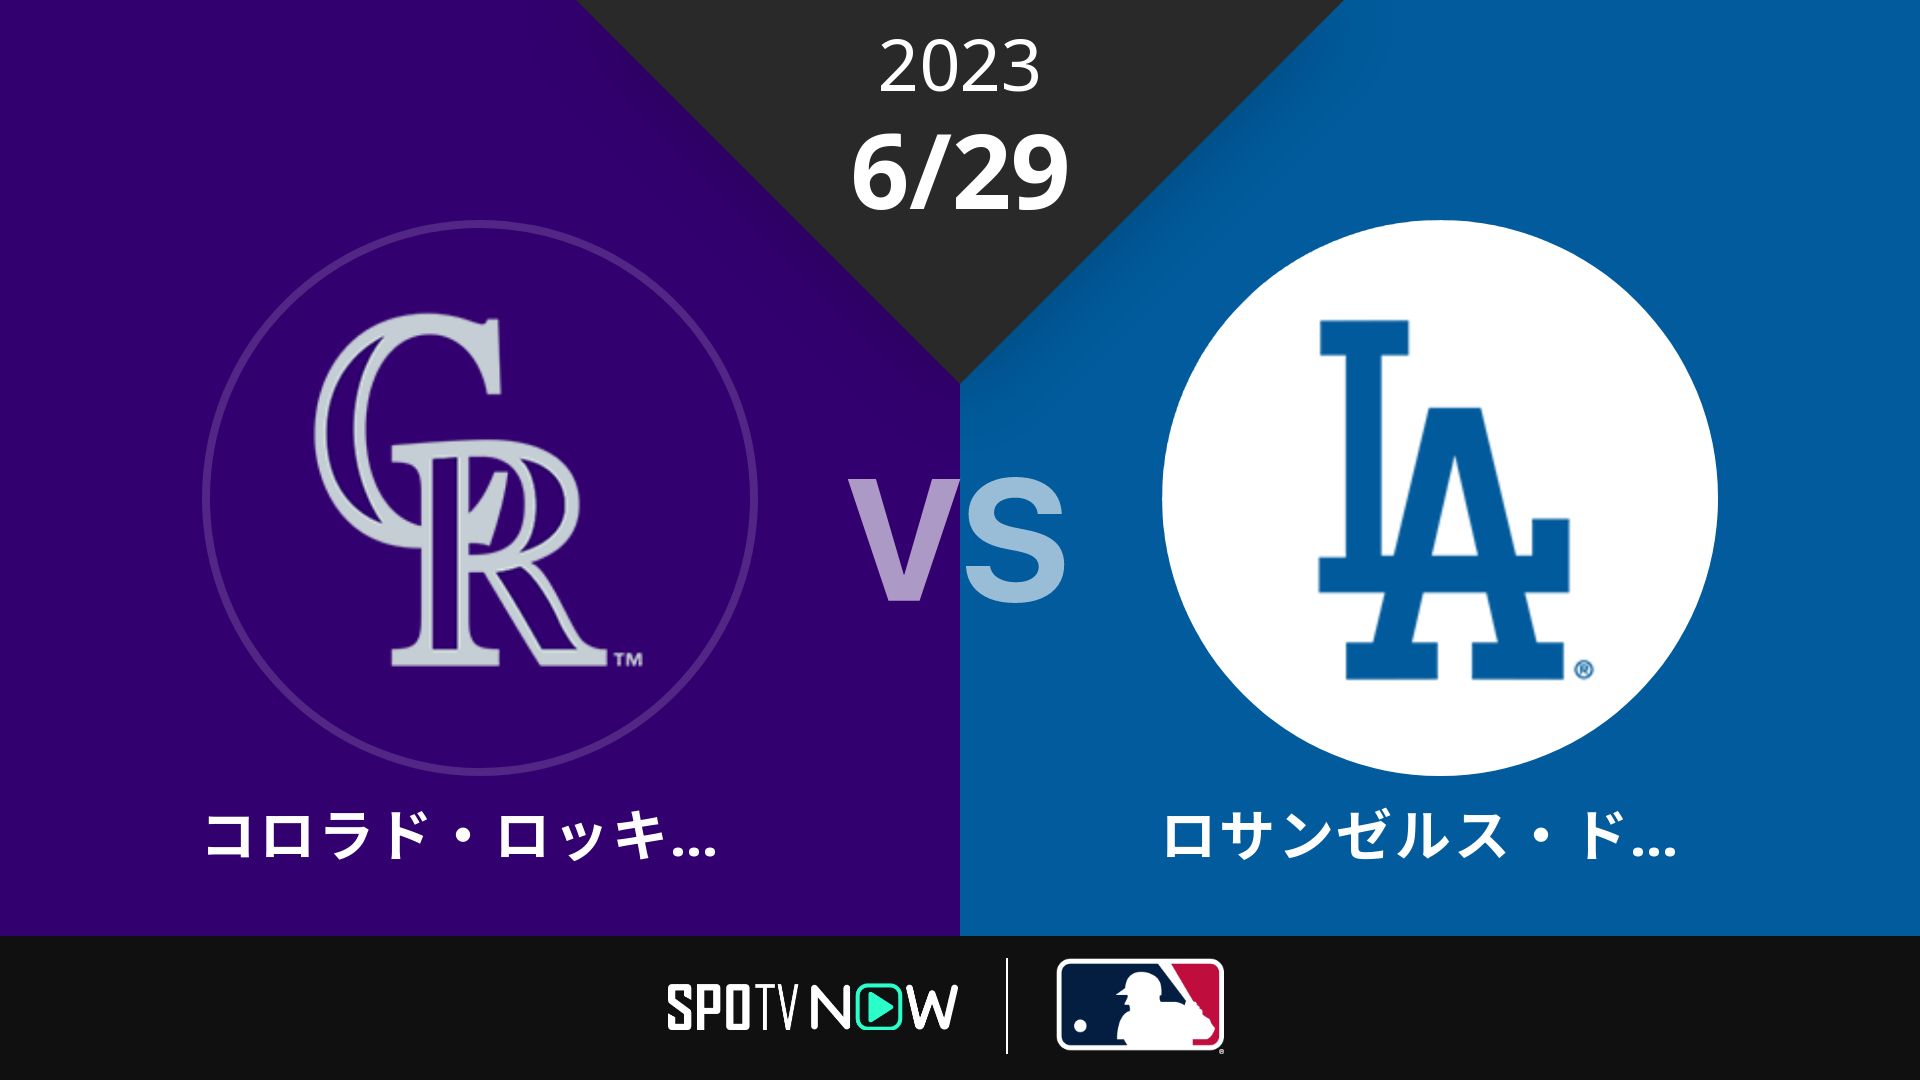 2023/6/29 ロッキーズ vs ドジャース [MLB]